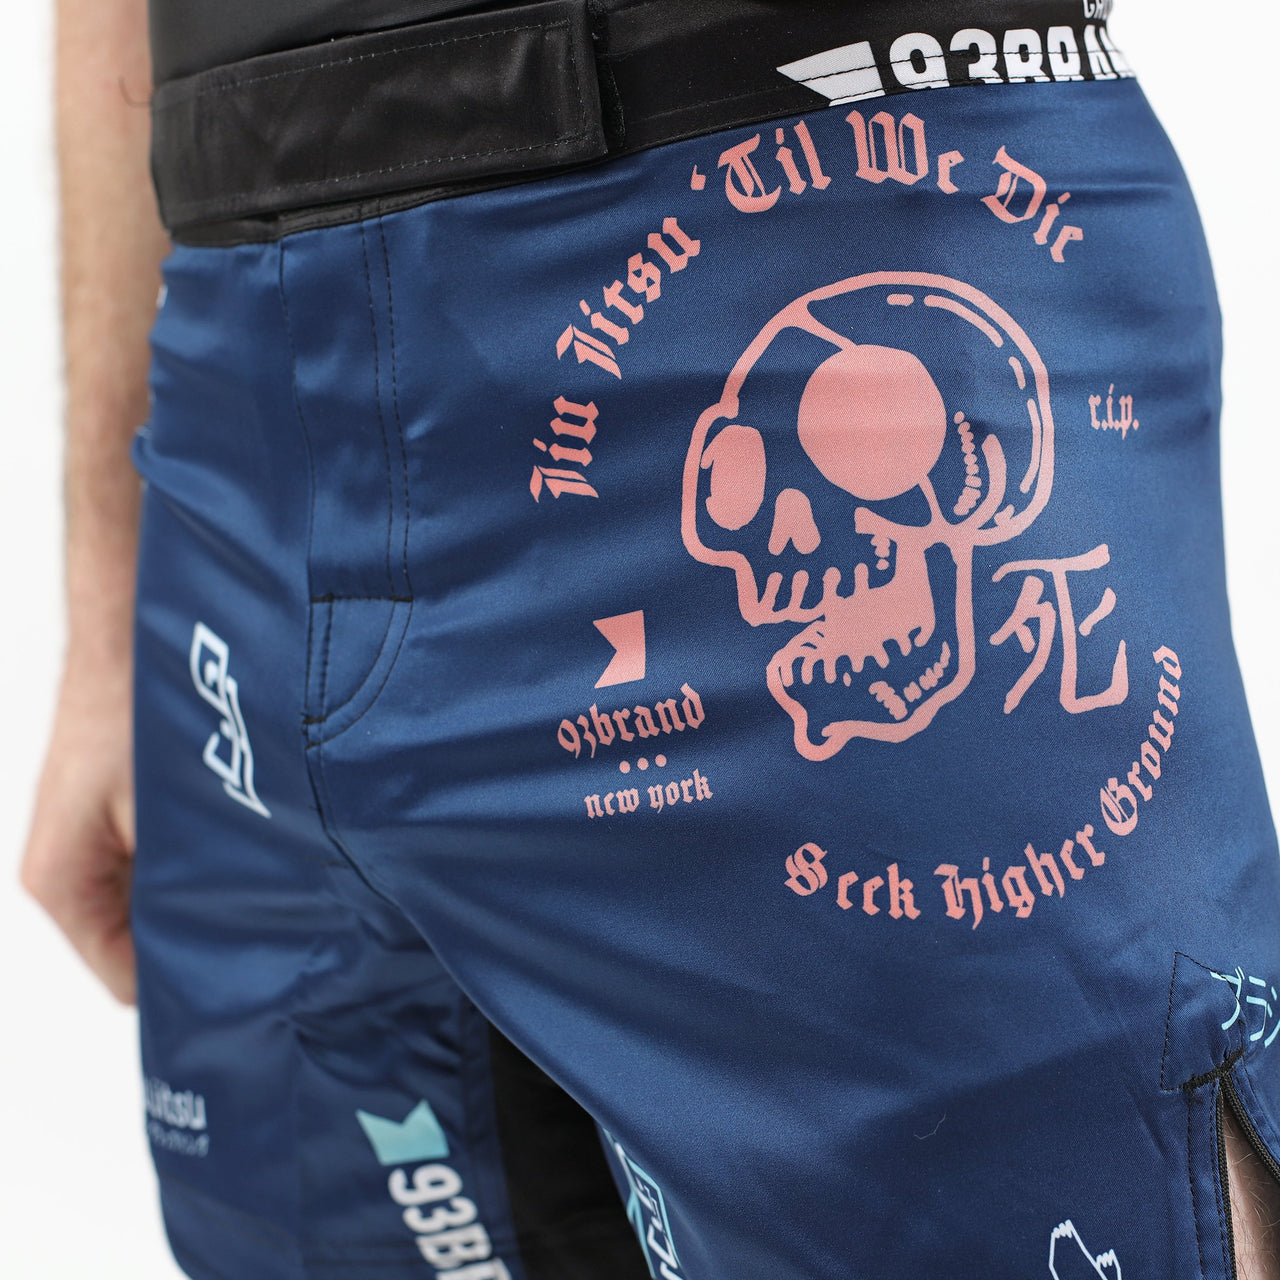 93brand "Splatter V2" Navy Blue Shorts (Regular Length)